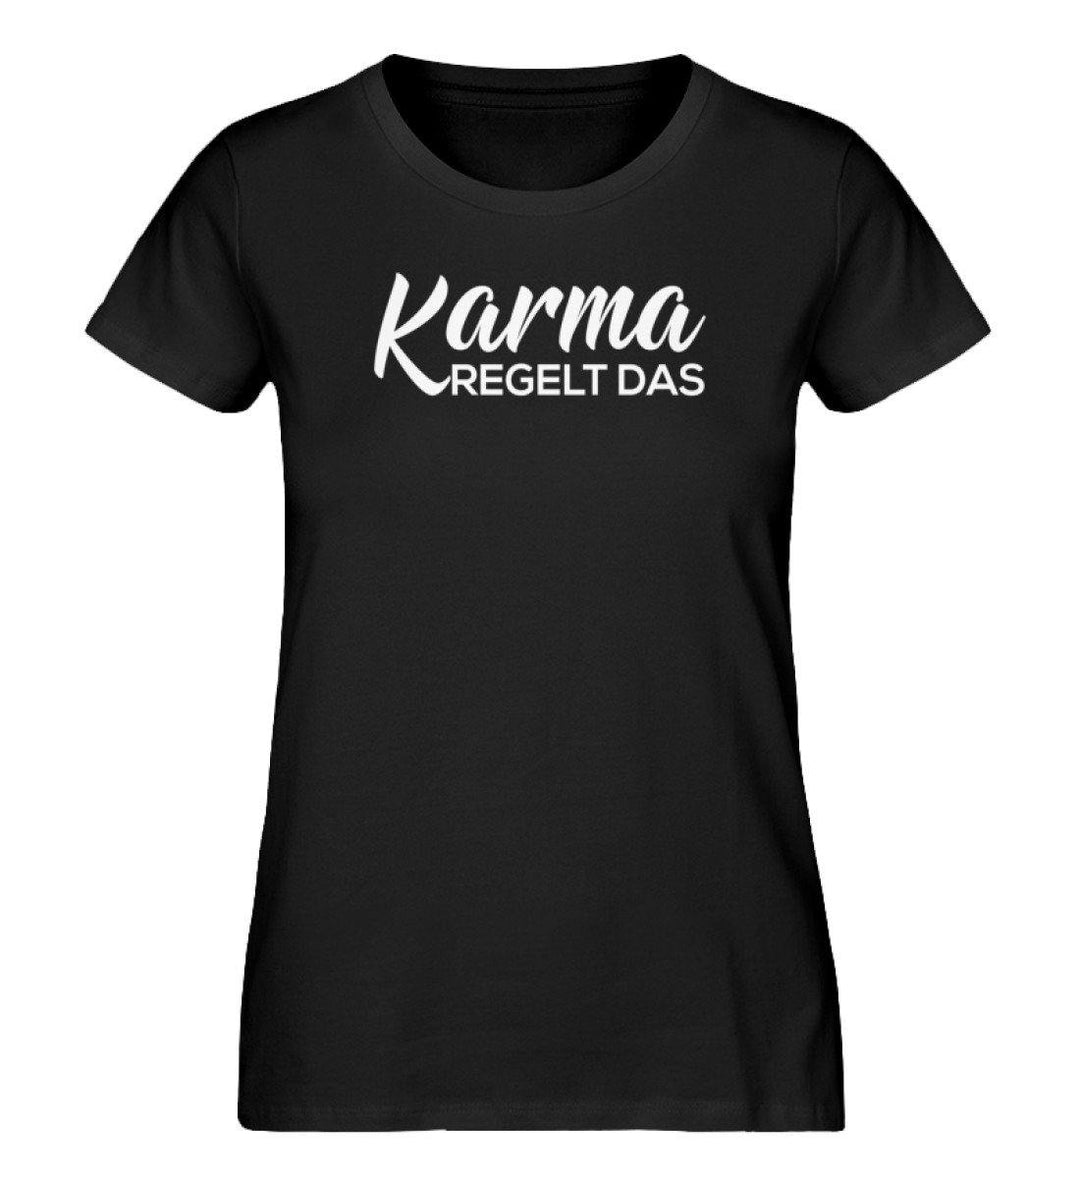 Karma Regelt Das - Damen Premium Organic Shirt - Words on Shirts Sag es mit dem Mittelfinger Shirts Hoodies Sweatshirt Taschen Gymsack Spruch Sprüche Statement